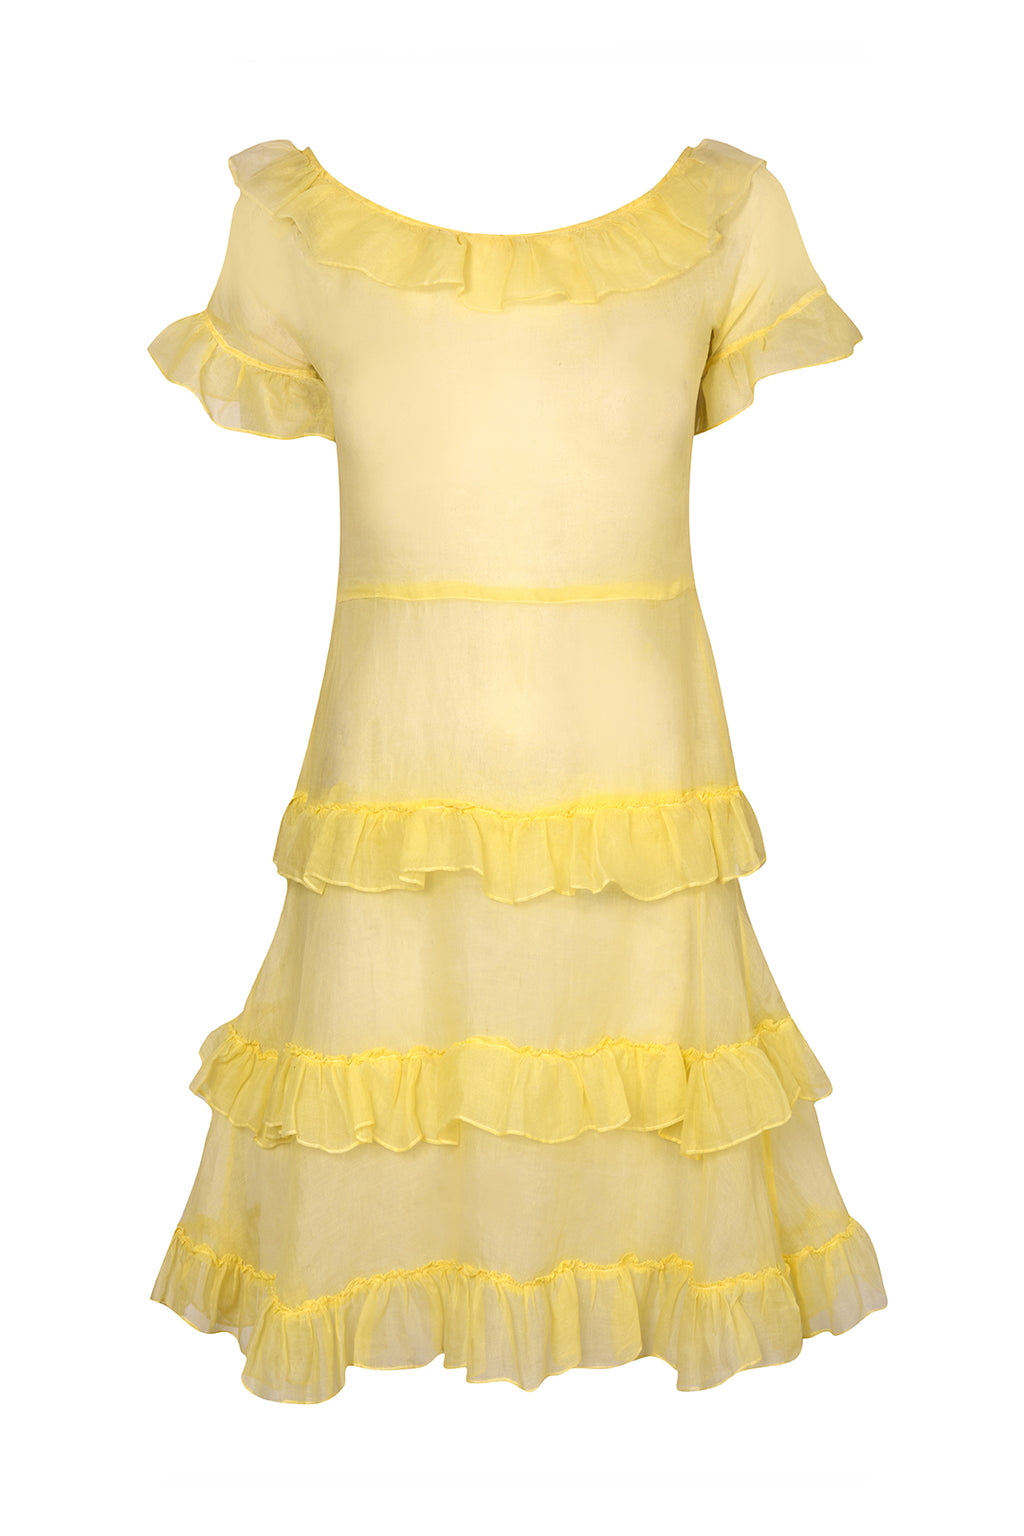 1940s Yellow Chiffon Ruffle Mini Dress